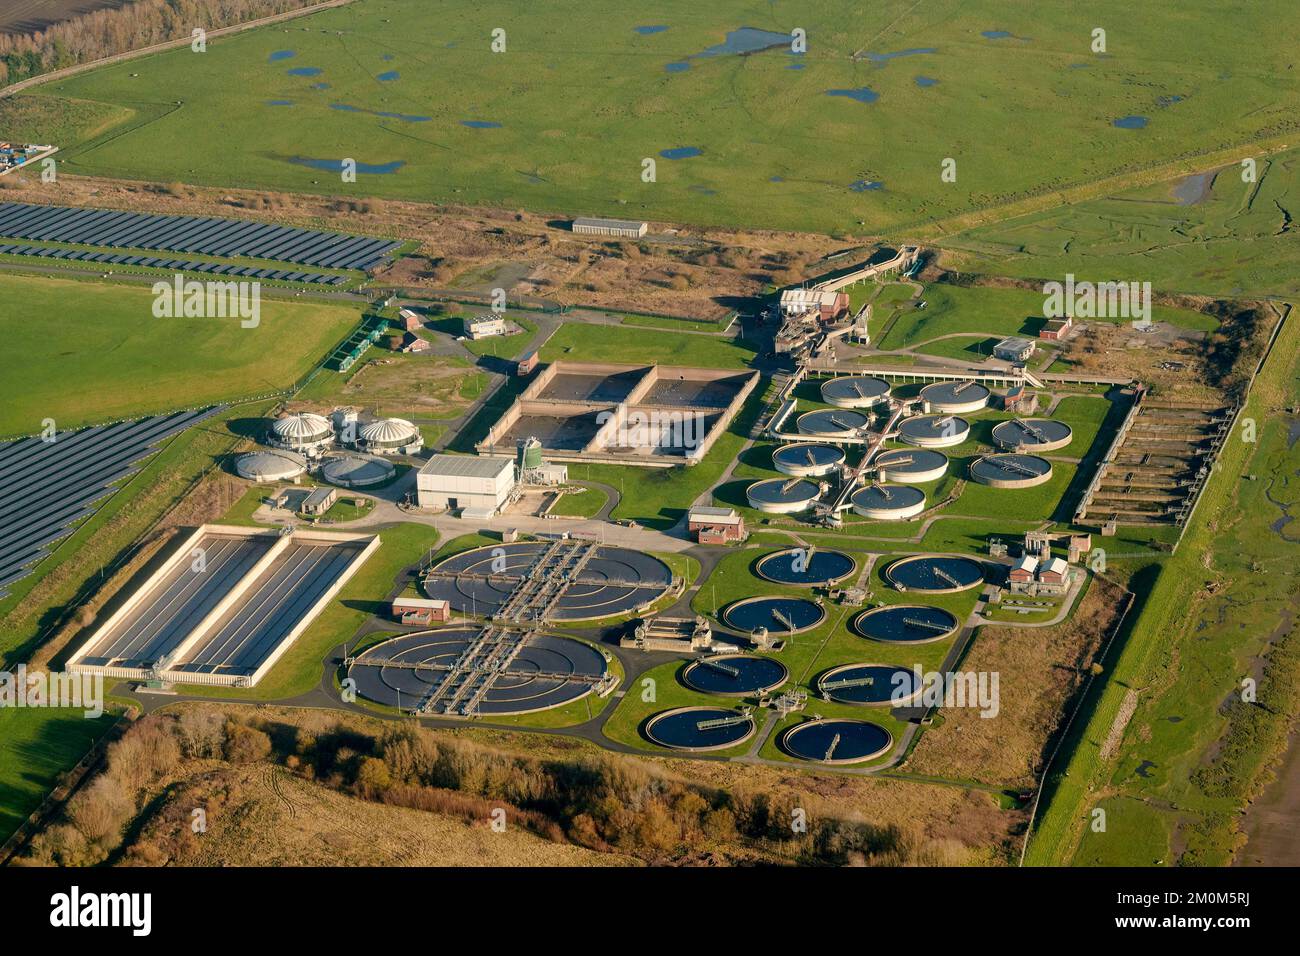 Une vue aérienne d'une usine de traitement de l'eau, à l'ouest de Preston, dans le nord-ouest de l'Angleterre, au Royaume-Uni Banque D'Images